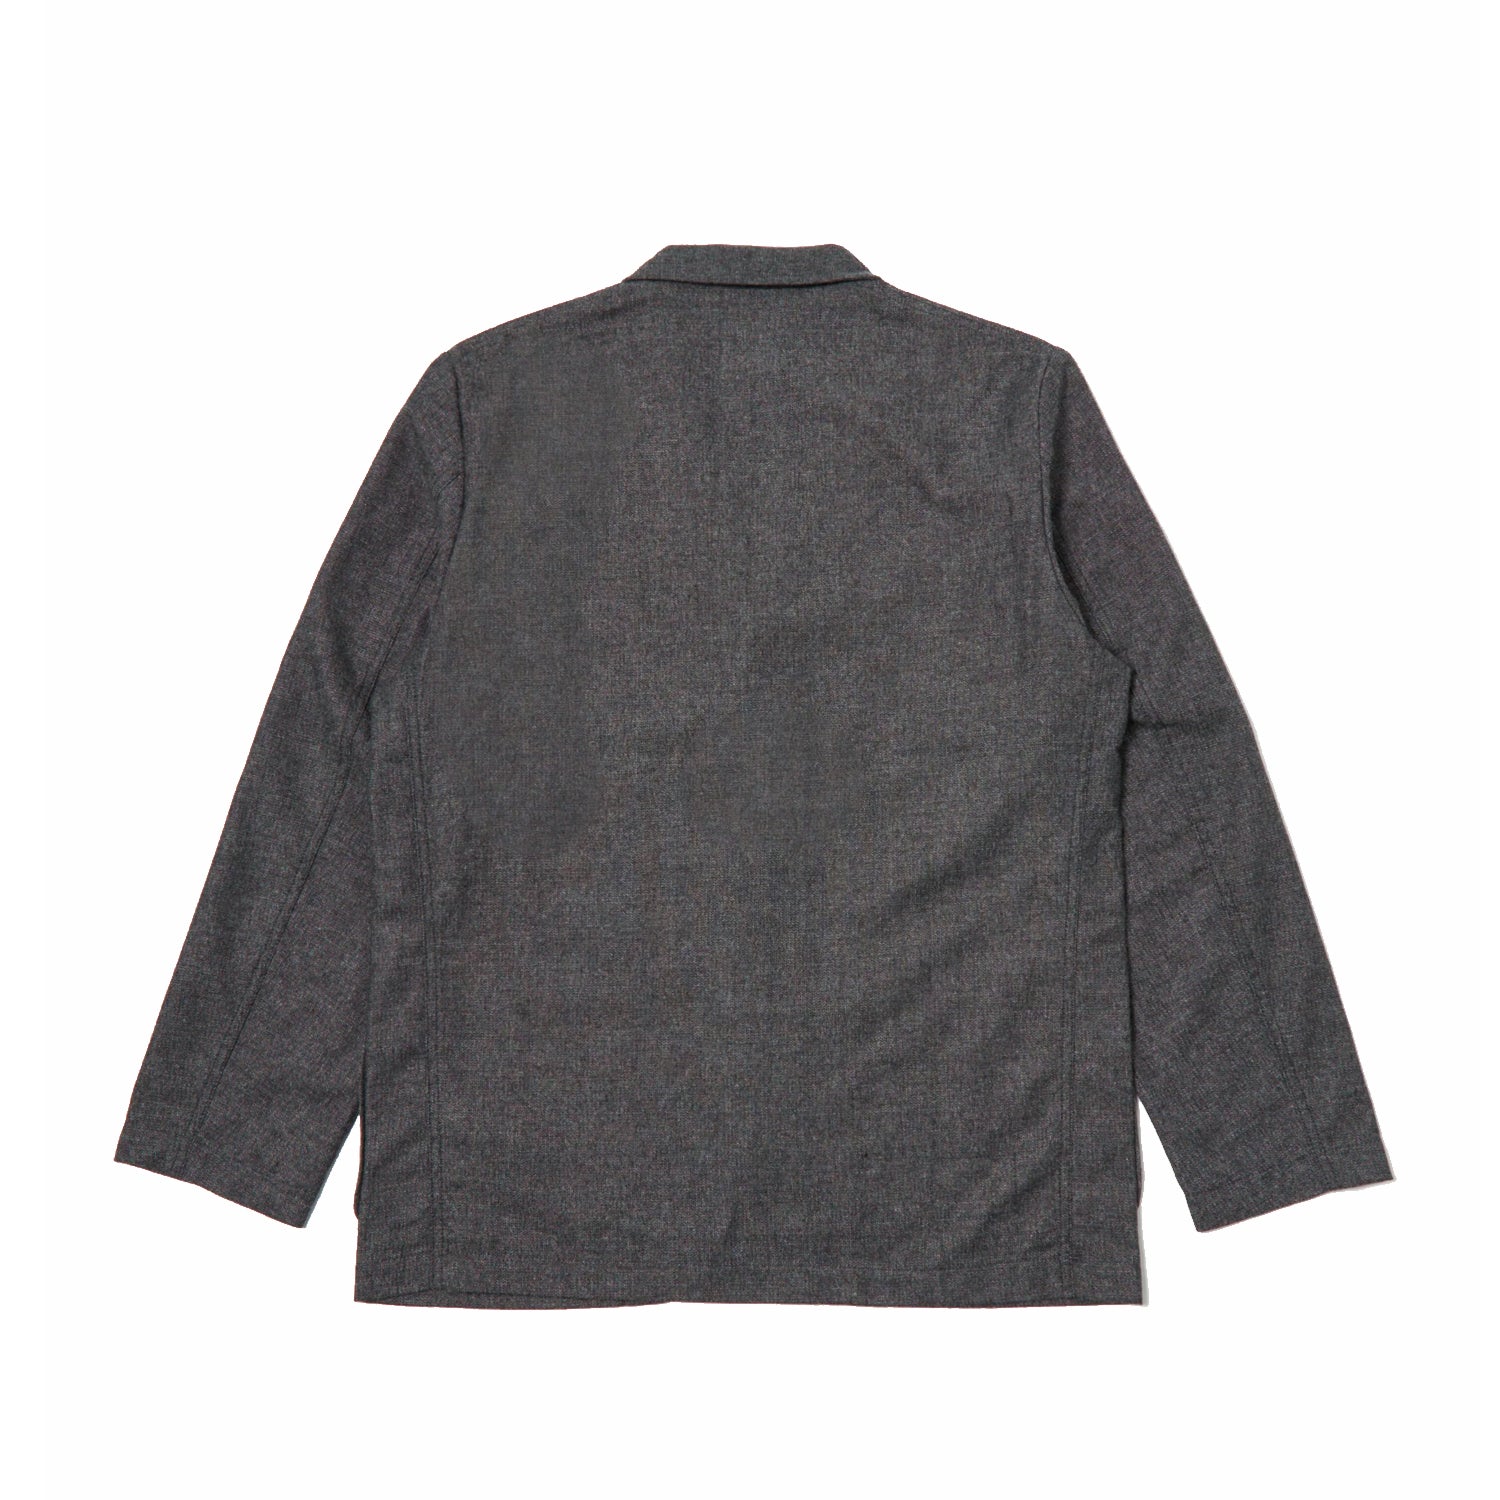 Three Button Jacket - Upcycled Italian Tweed